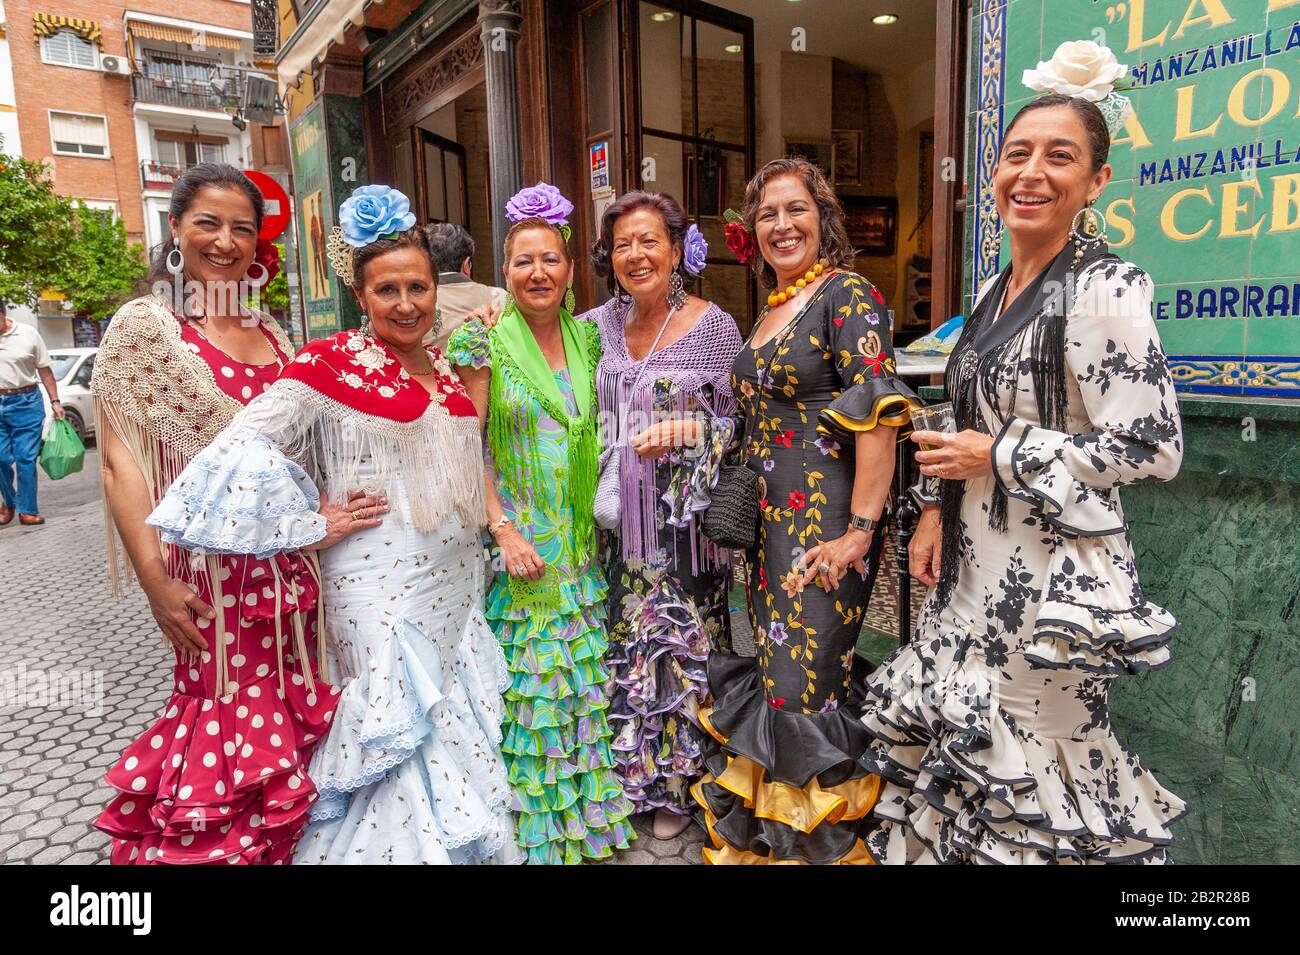 Groupe de femmes portant des robes flamenco colorées à l'extérieur d'un bar pendant la foire d'avril de Séville, Espagne Banque D'Images